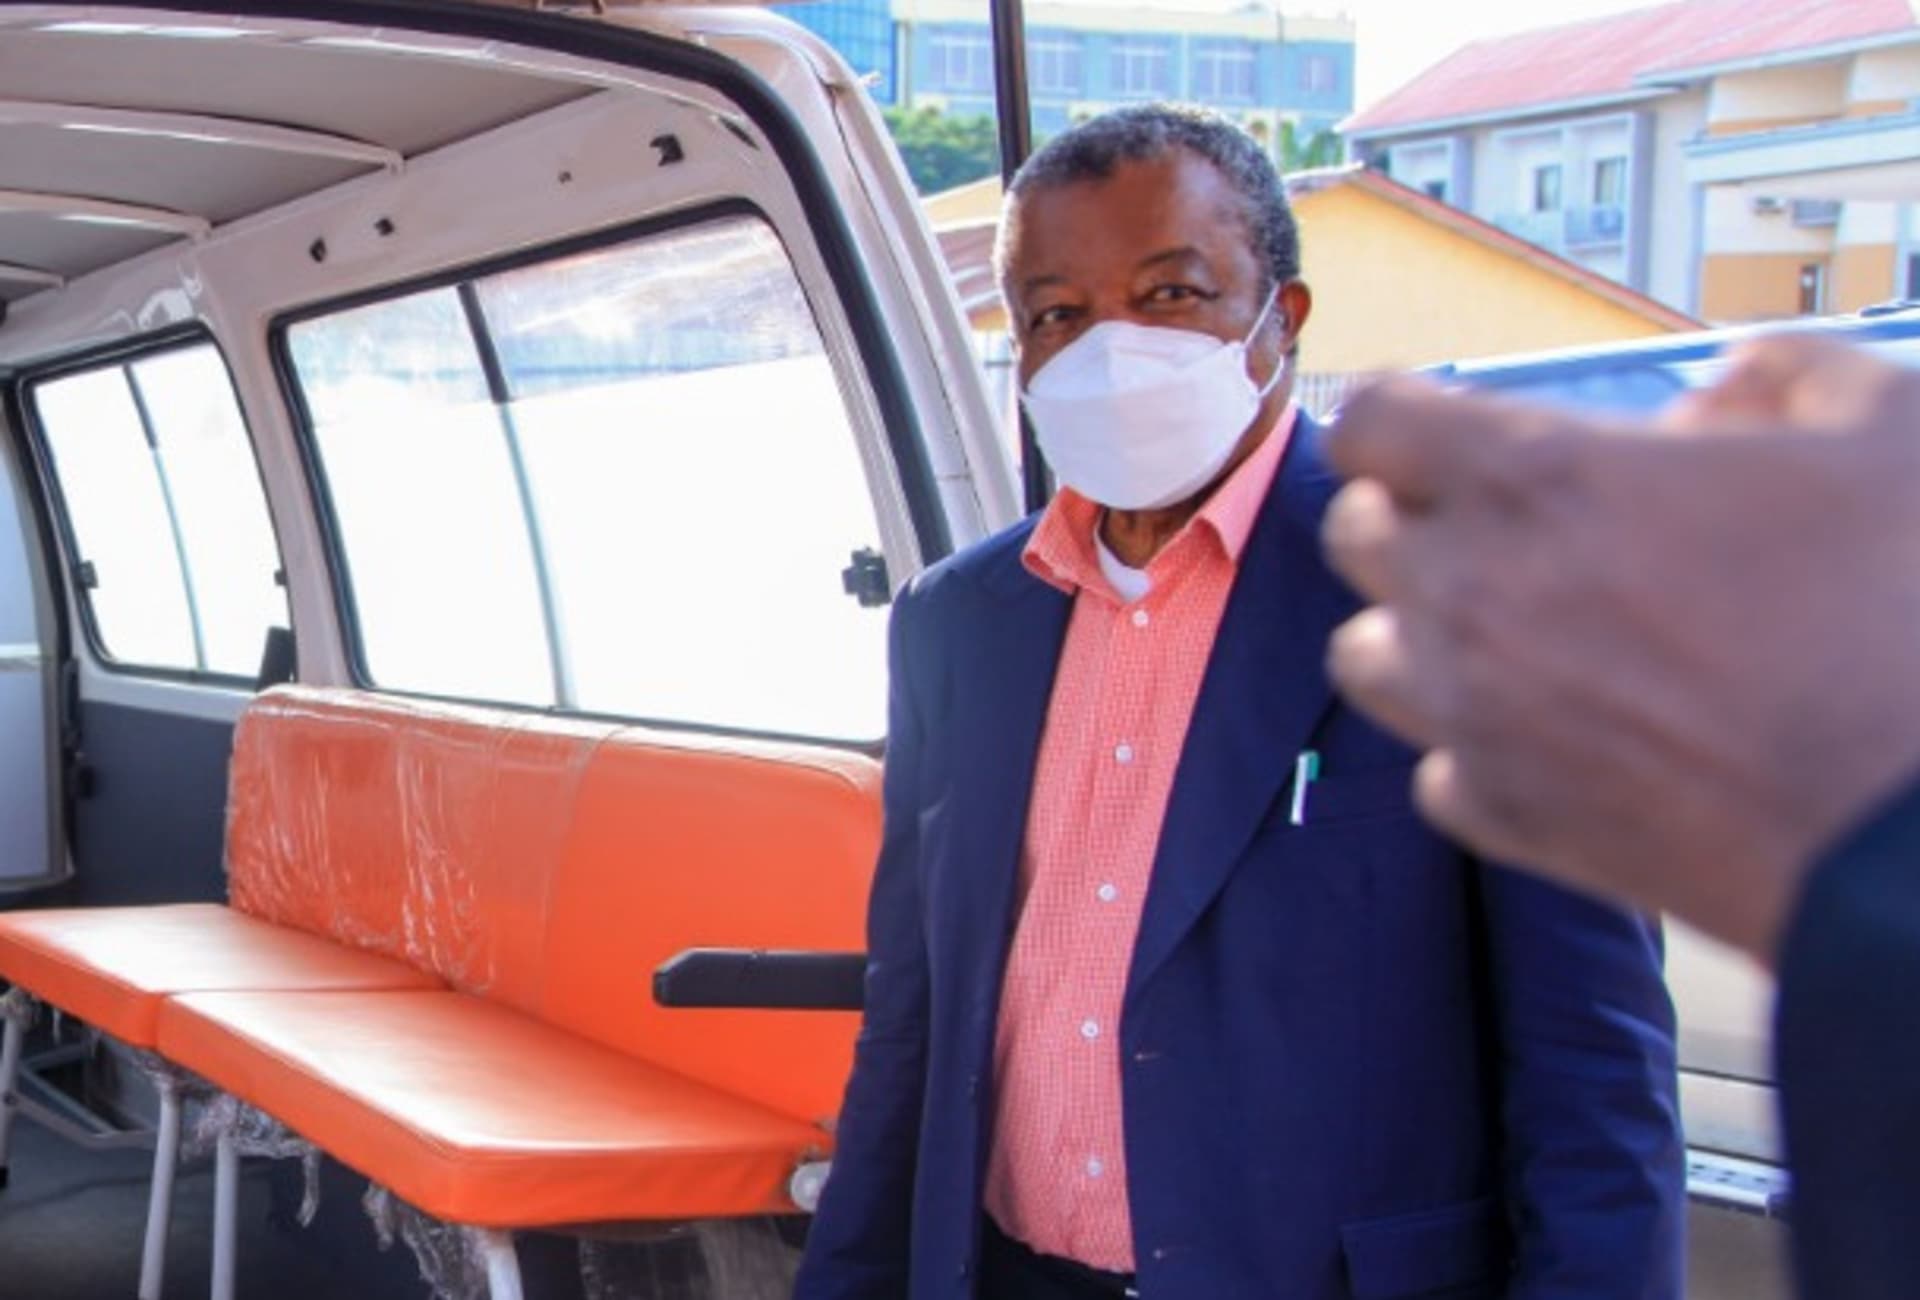 Virolog Muyembe u nového zdravotnického terénního vozidla pořízeného kvůli koronaviru